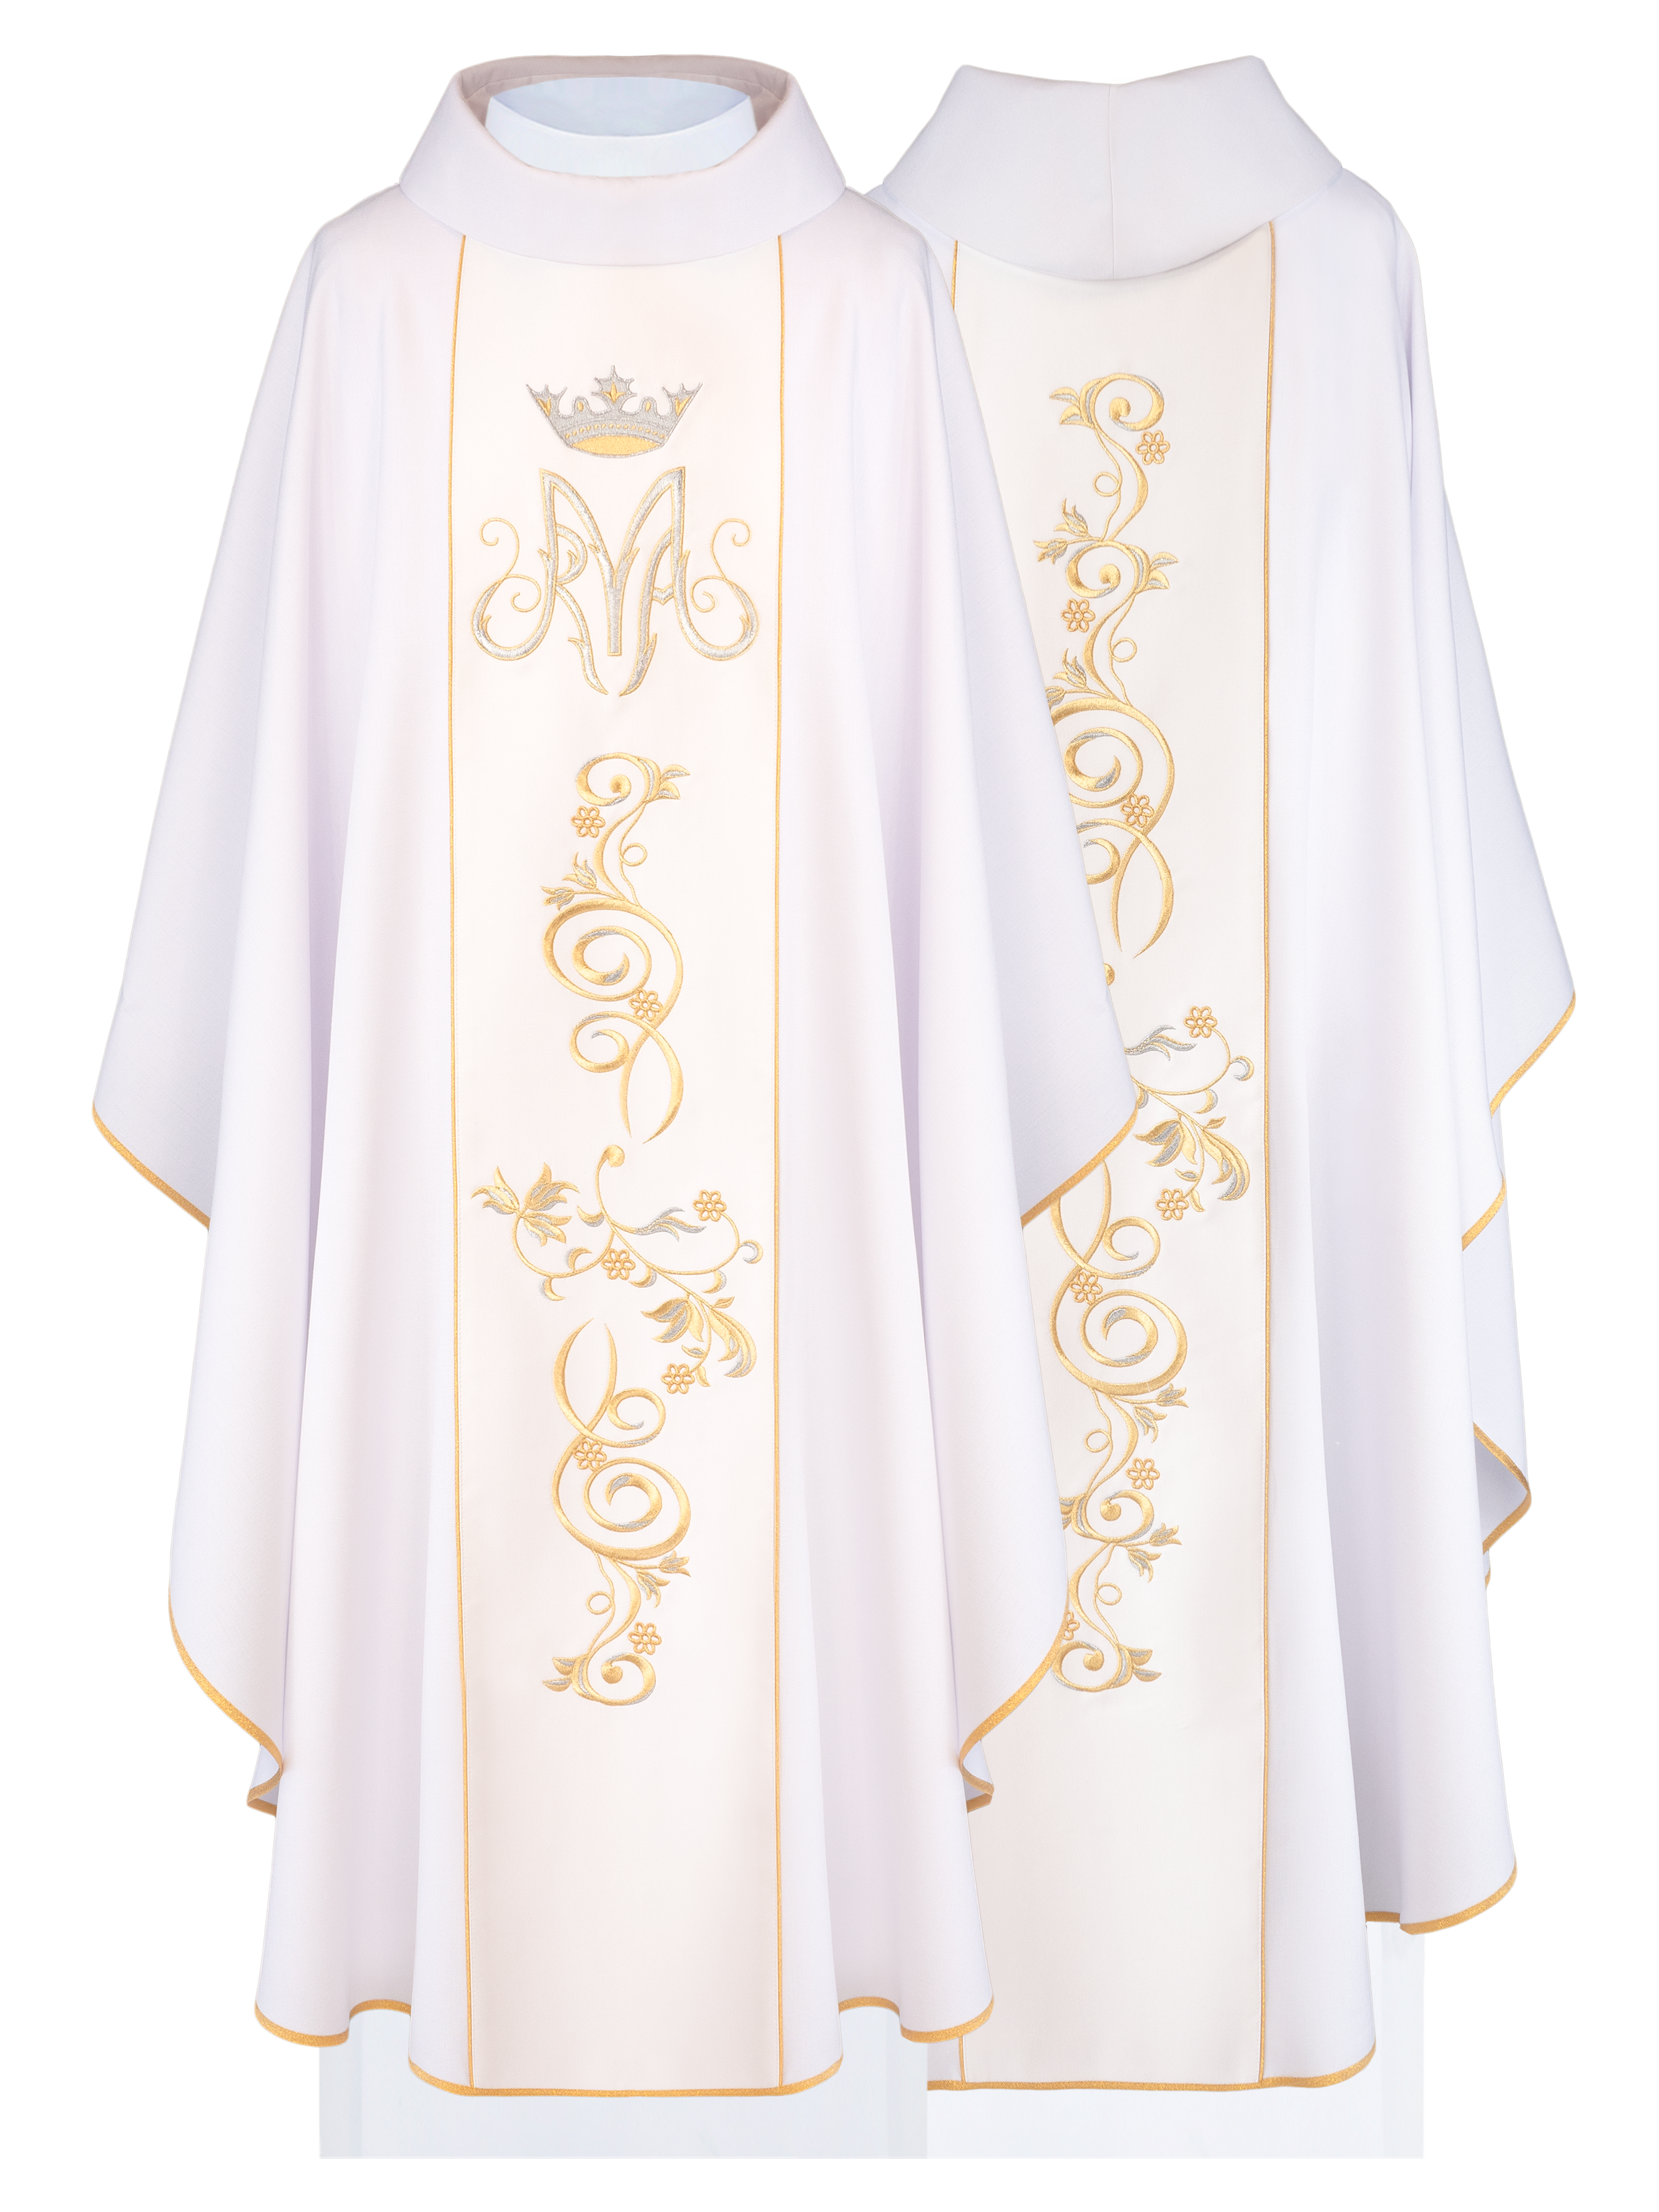 Ornat liturgiczny Maryjny z haftowanym pasem